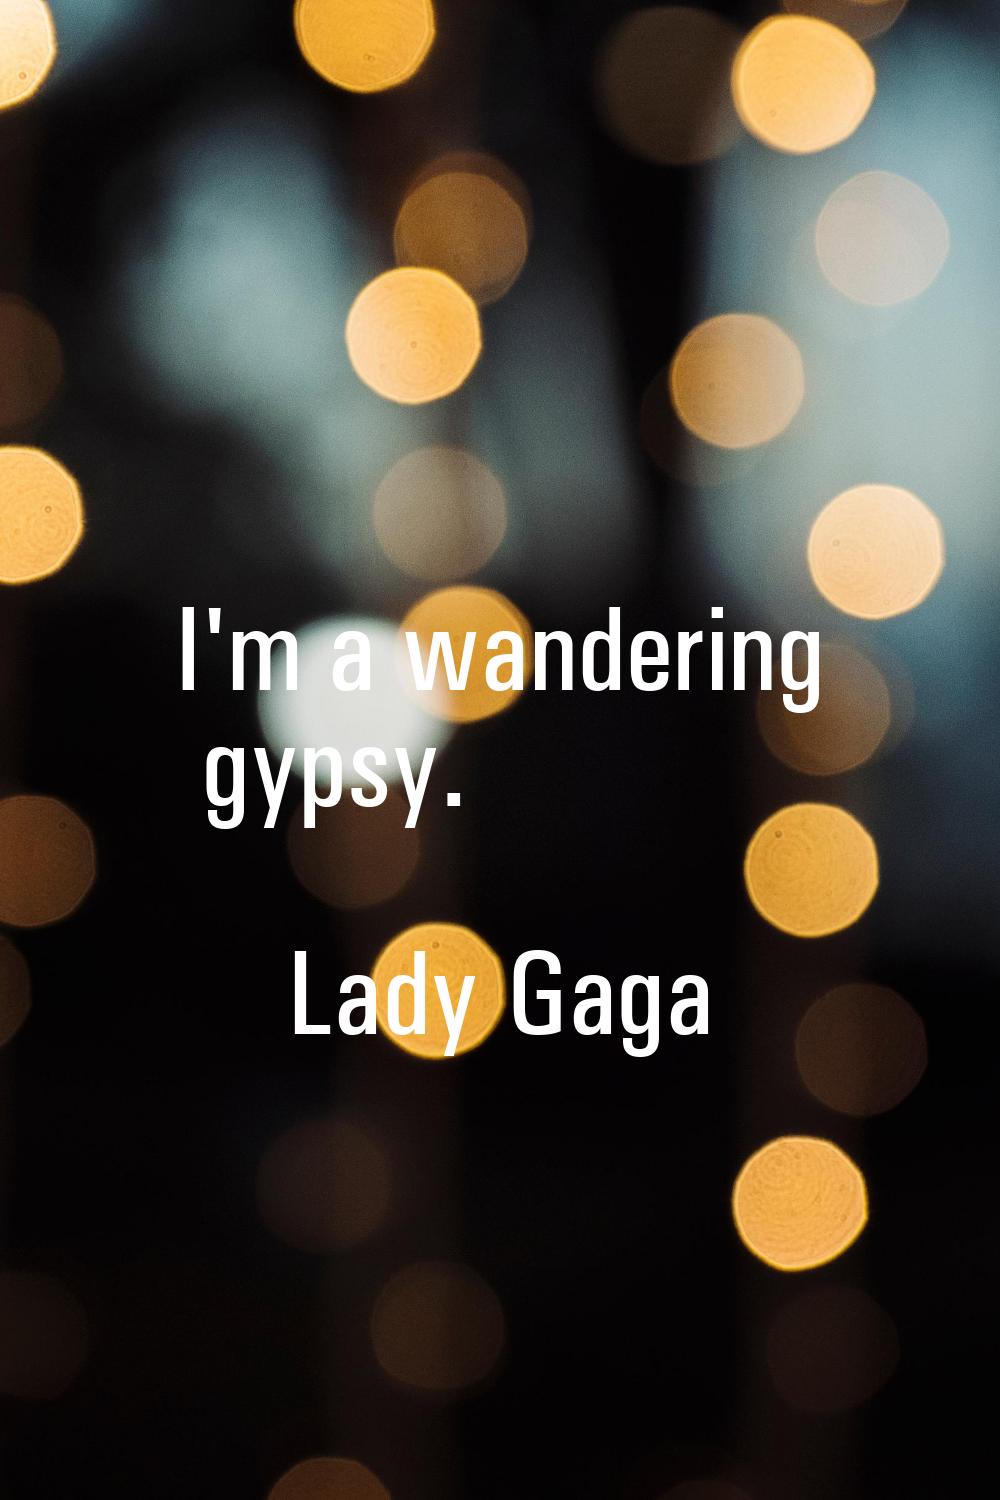 I'm a wandering gypsy.